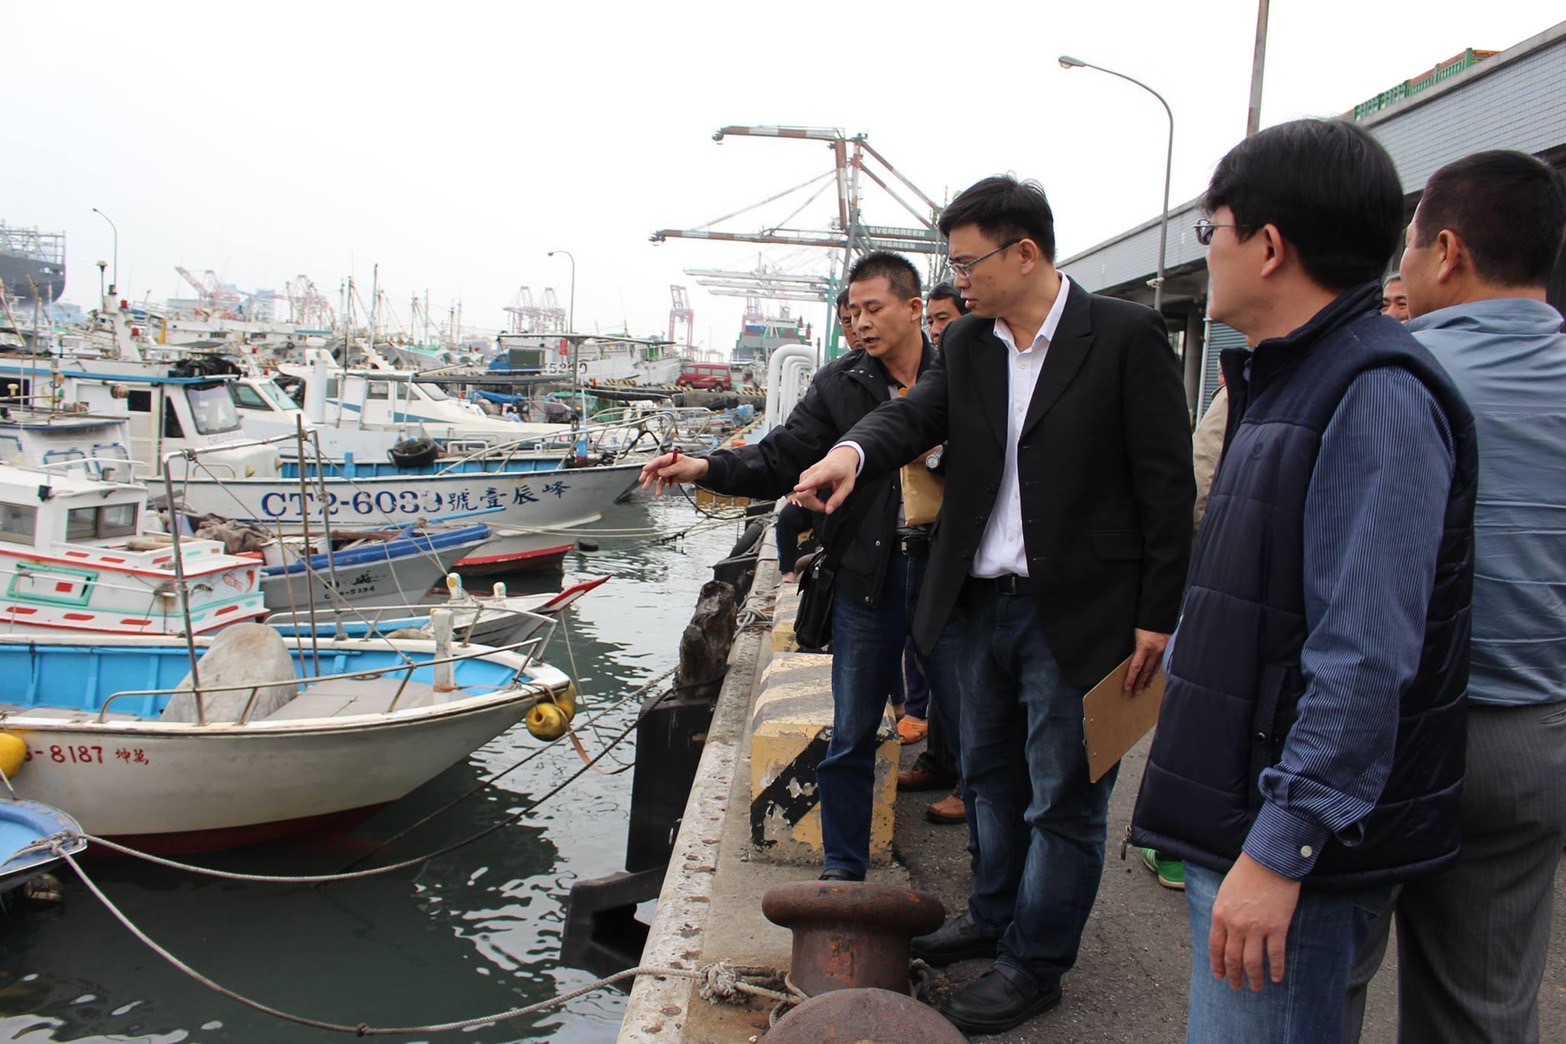 賴瑞隆成功爭取農業部、市府補助1620萬元 小港臨海新村漁港路面9月首度翻修